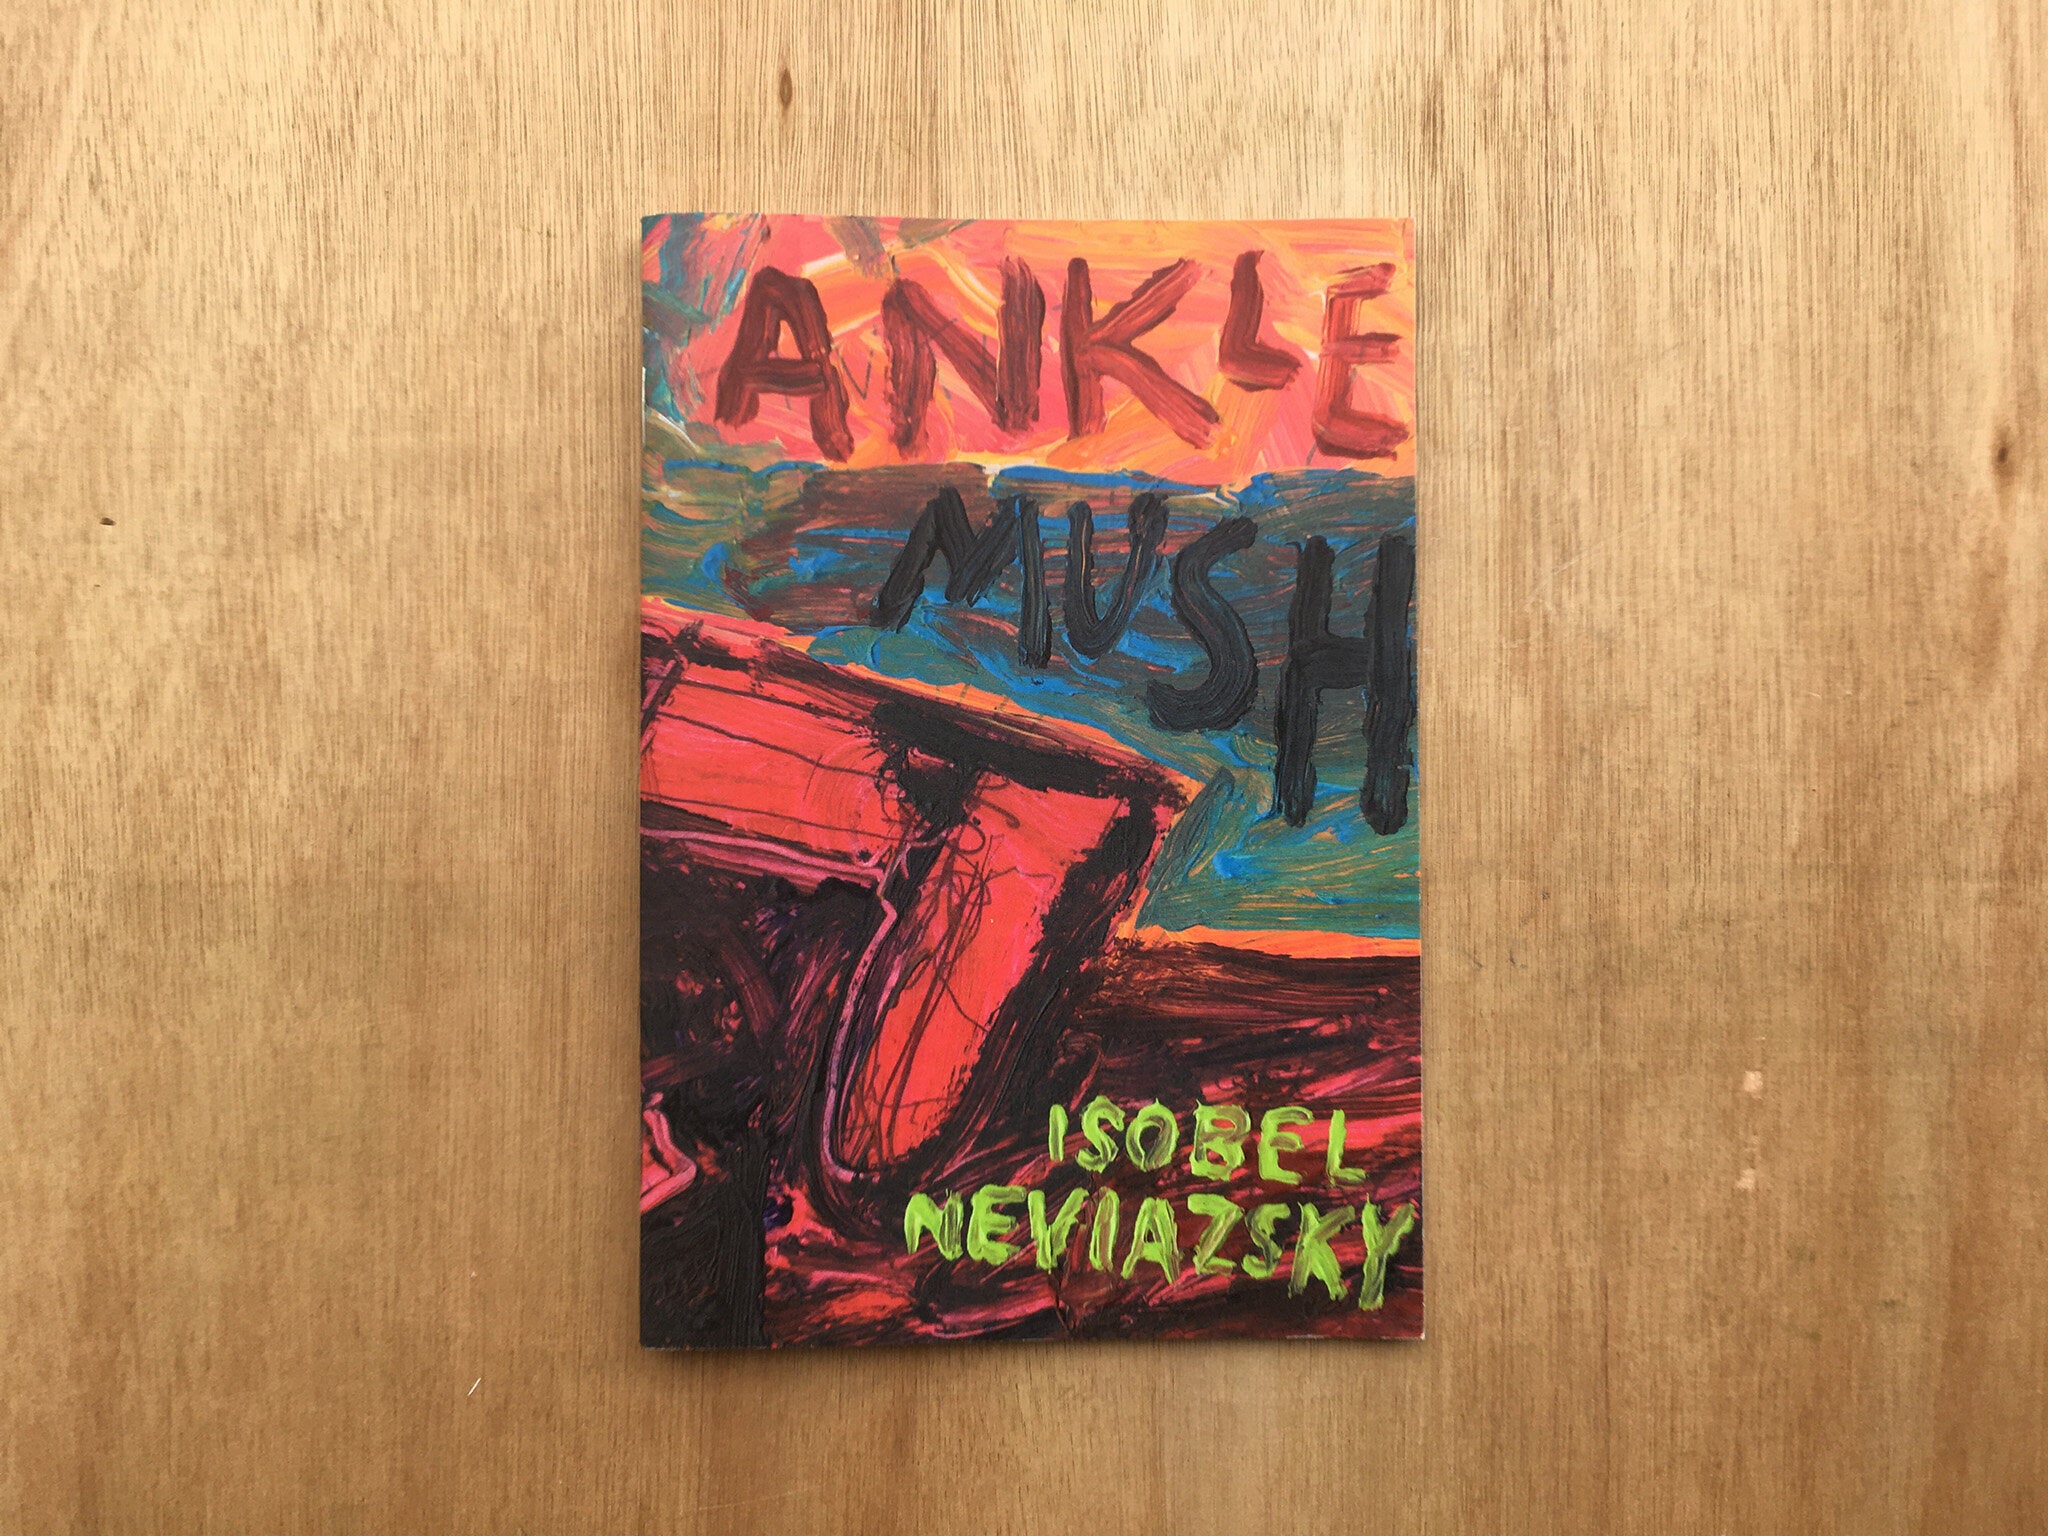 ANKLE MUSH by Isobel Neviazsky